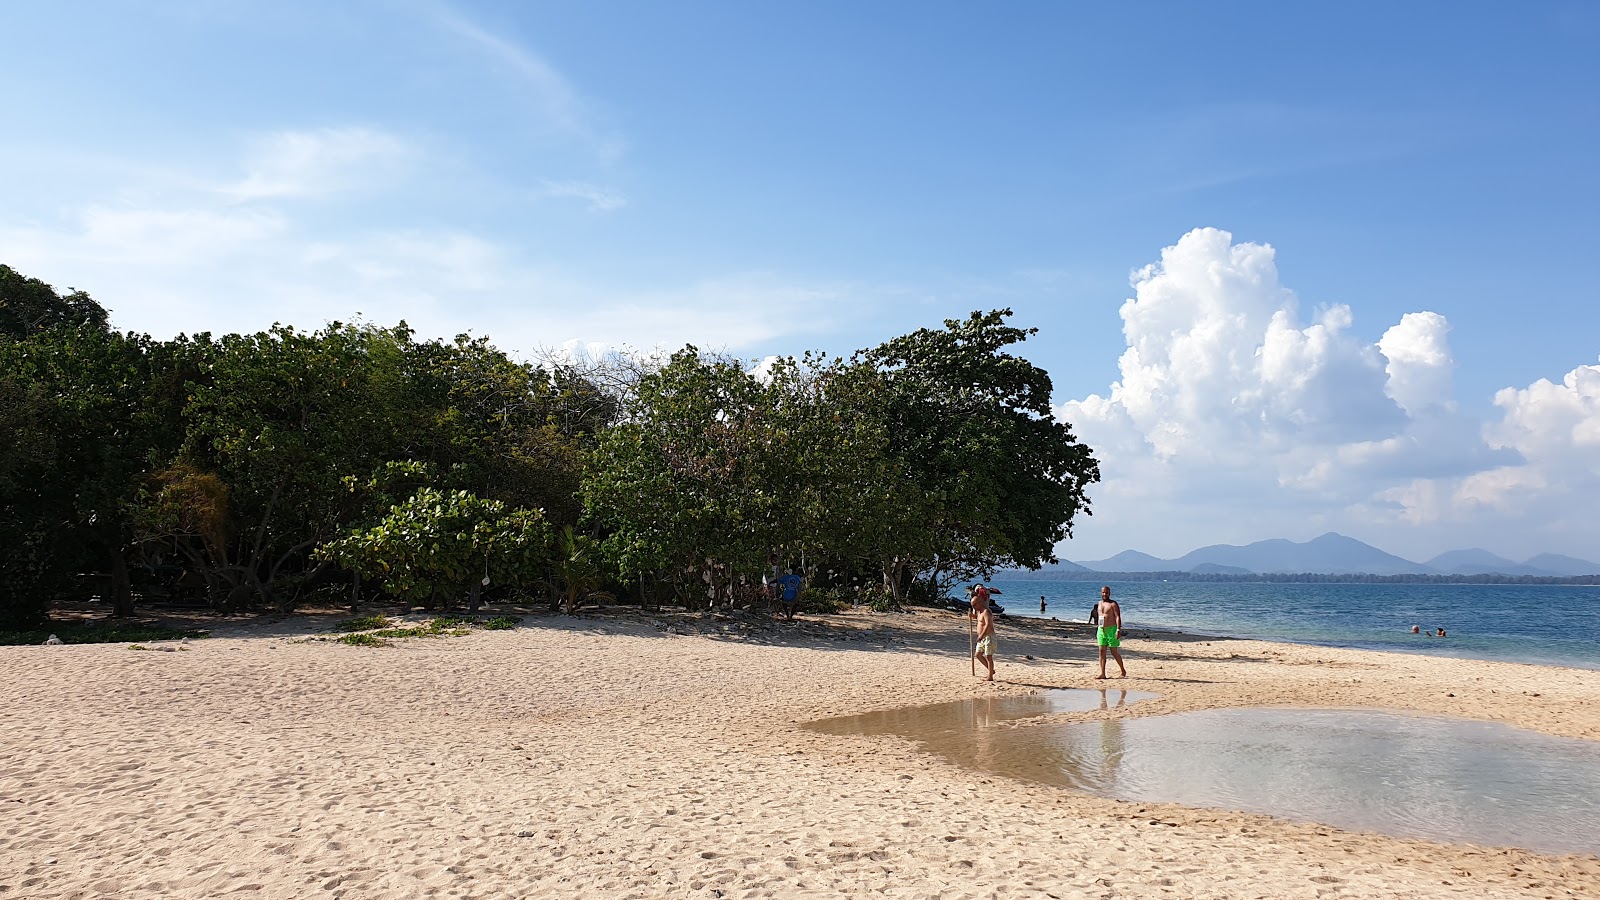 Koh Talu Plajı'in fotoğrafı doğrudan plaj ile birlikte